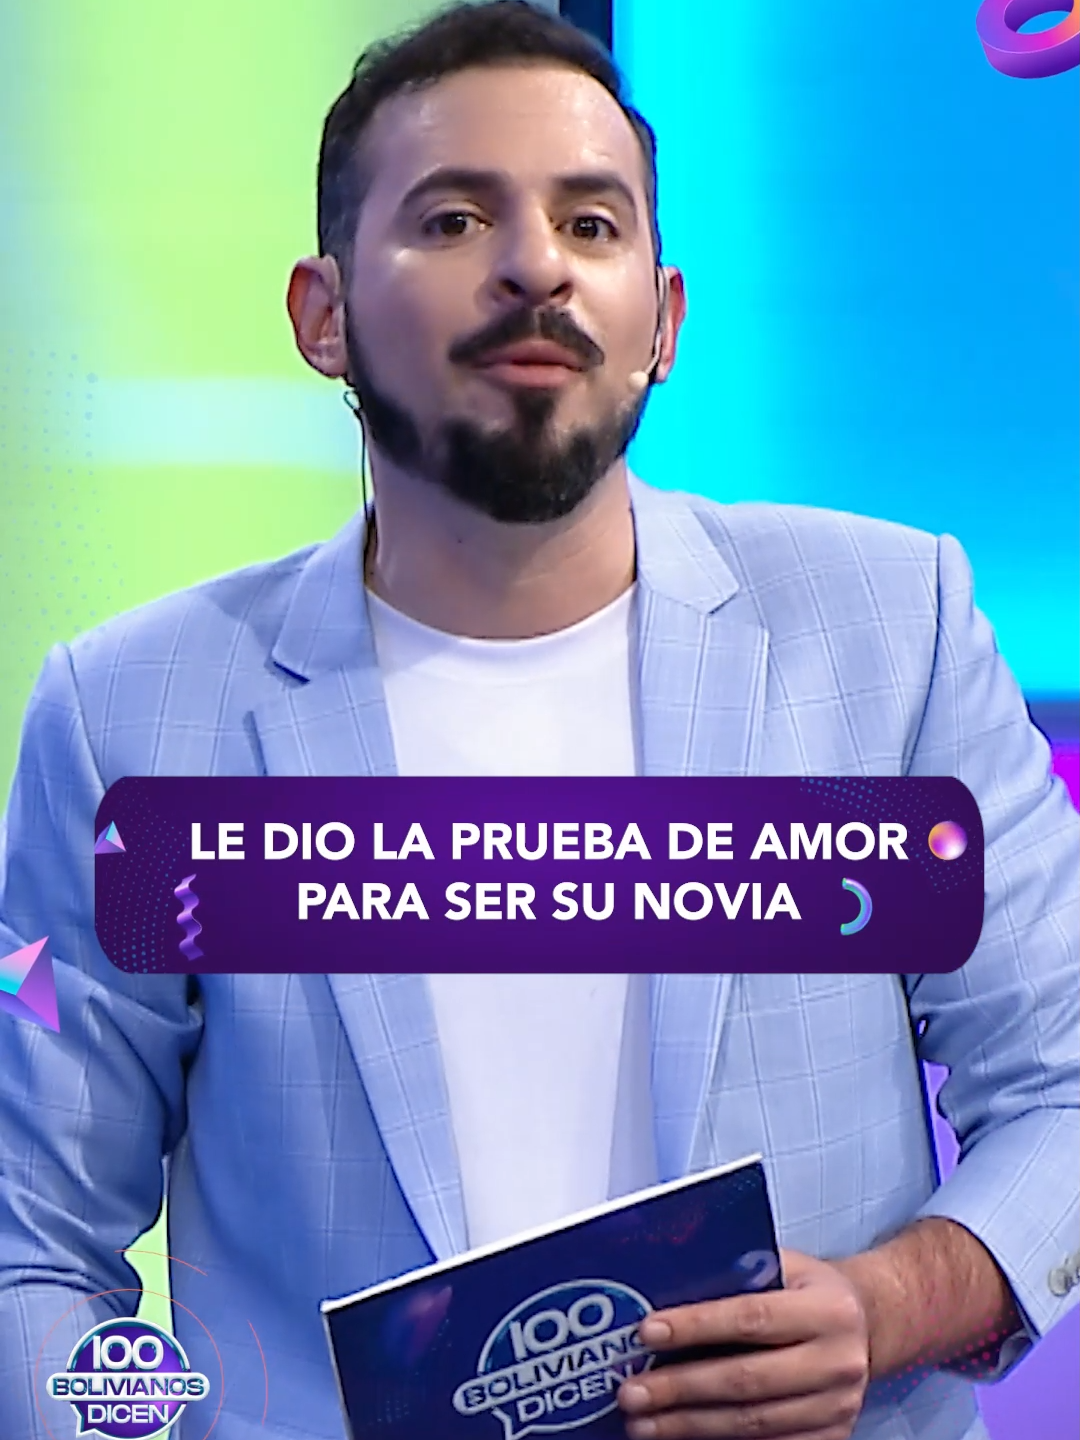 La nueva prueba de amor 😱 #100BolivianosDicen #Entretenimiento #Humor #HistoriasPorContar #DiversiónGarantizada